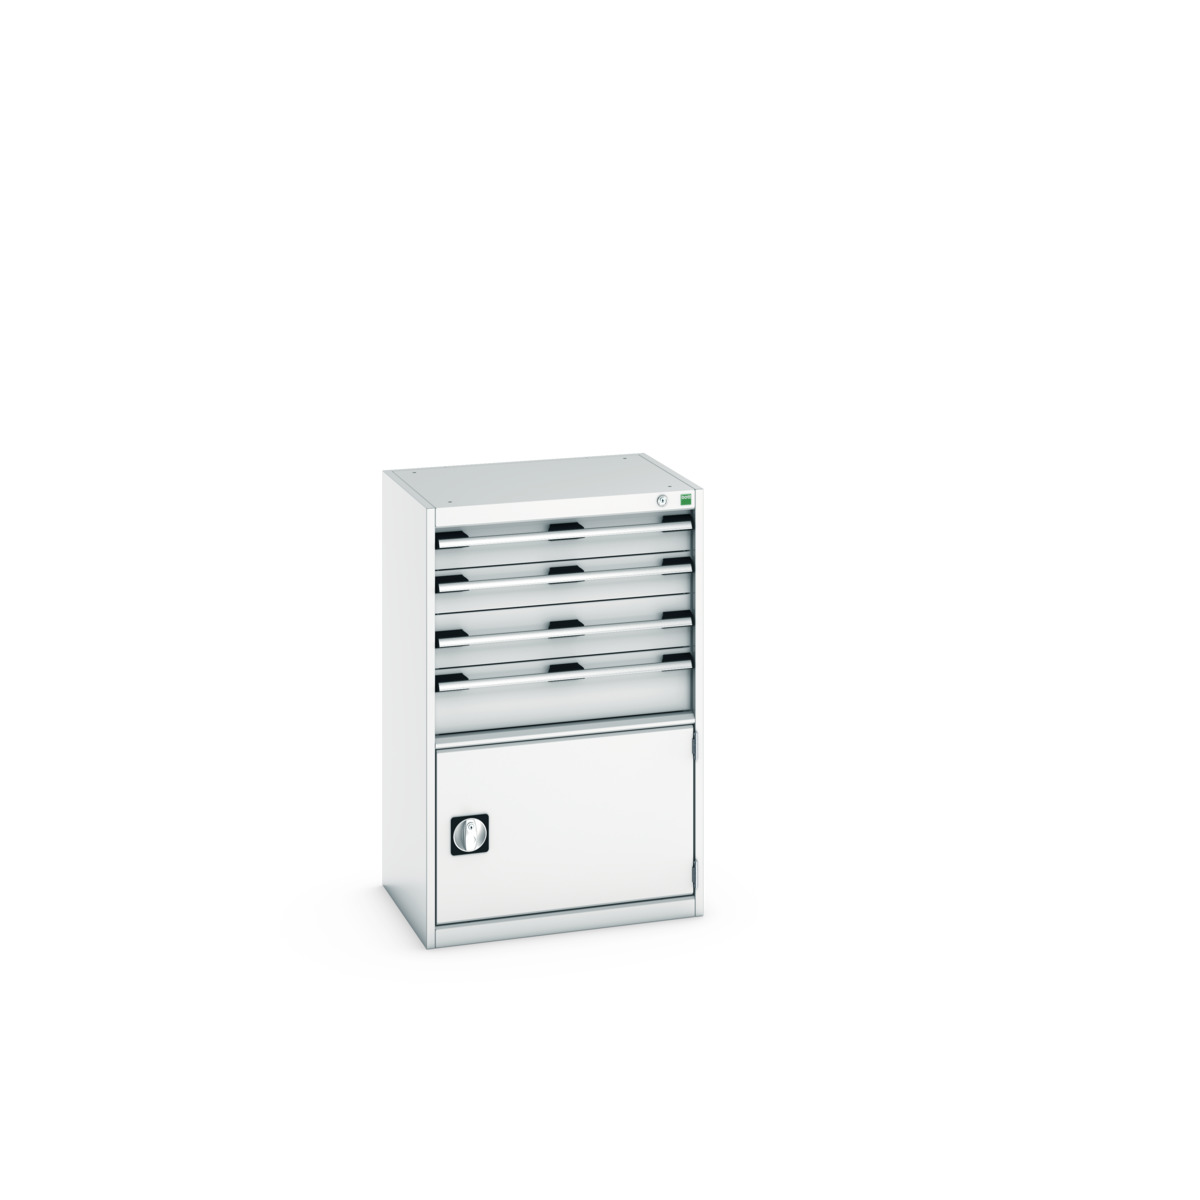 40011052.16V - cubio drawer-door cabinet